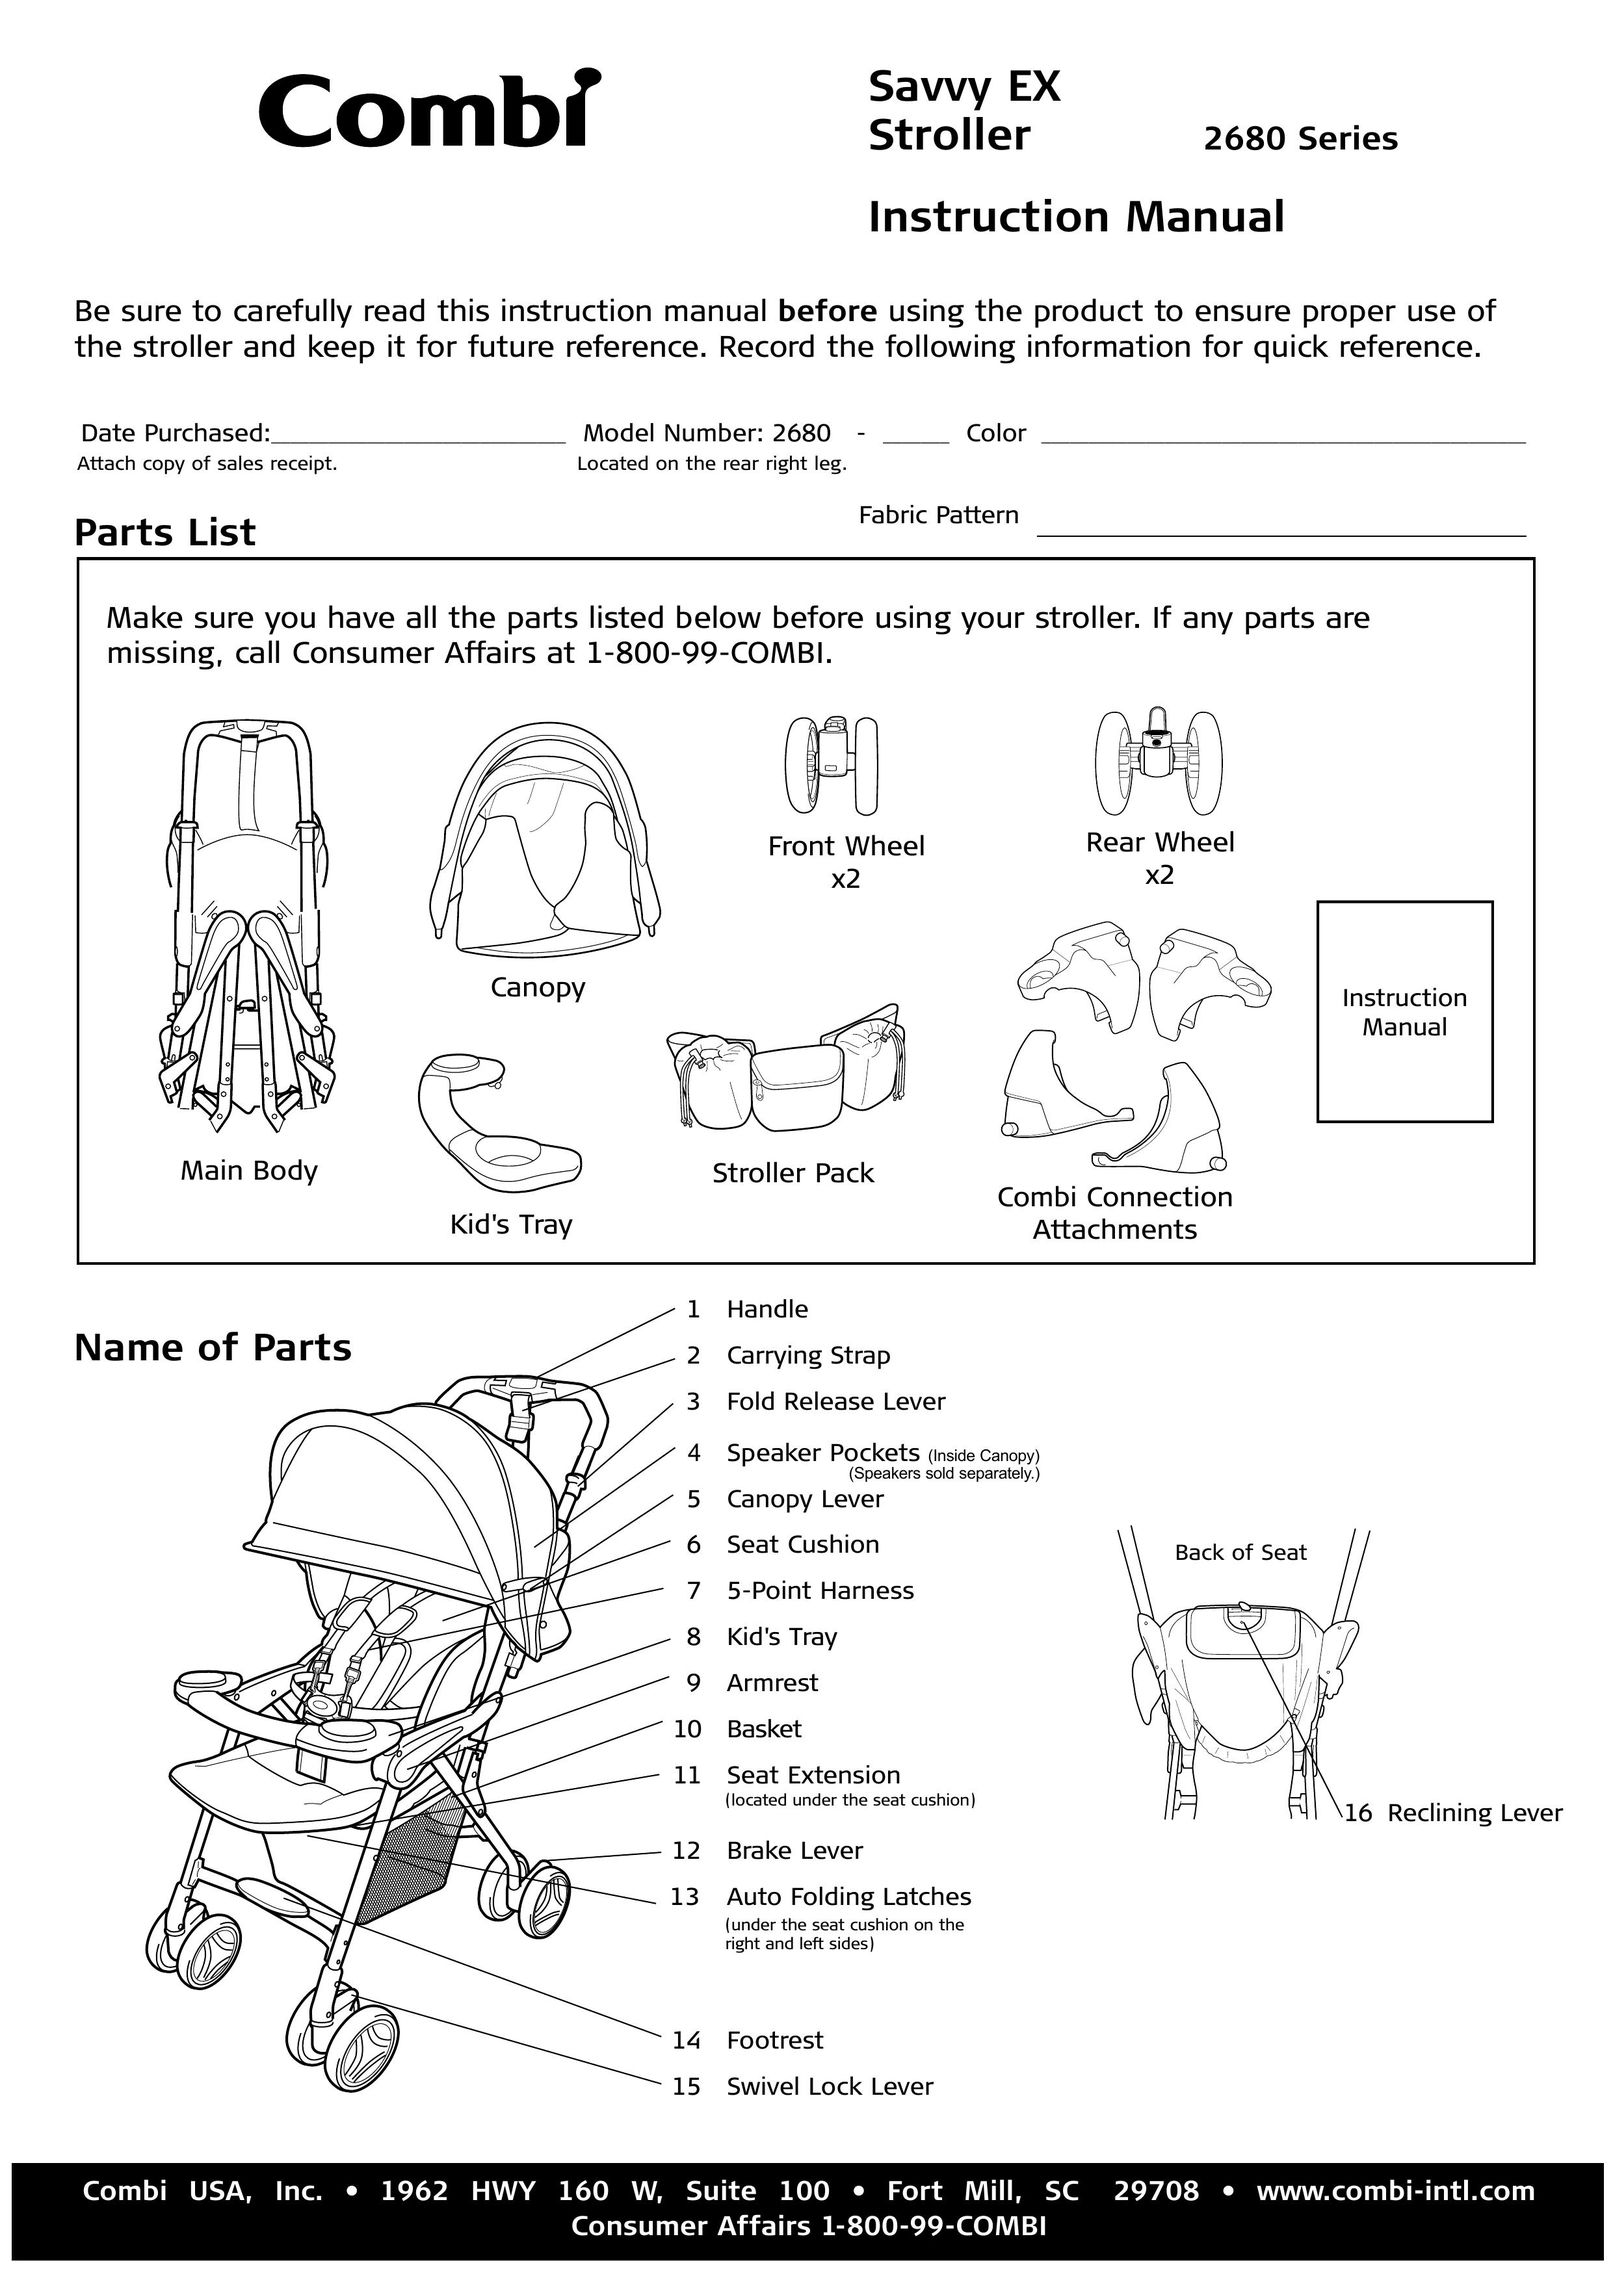 Combi 2680 Stroller User Manual